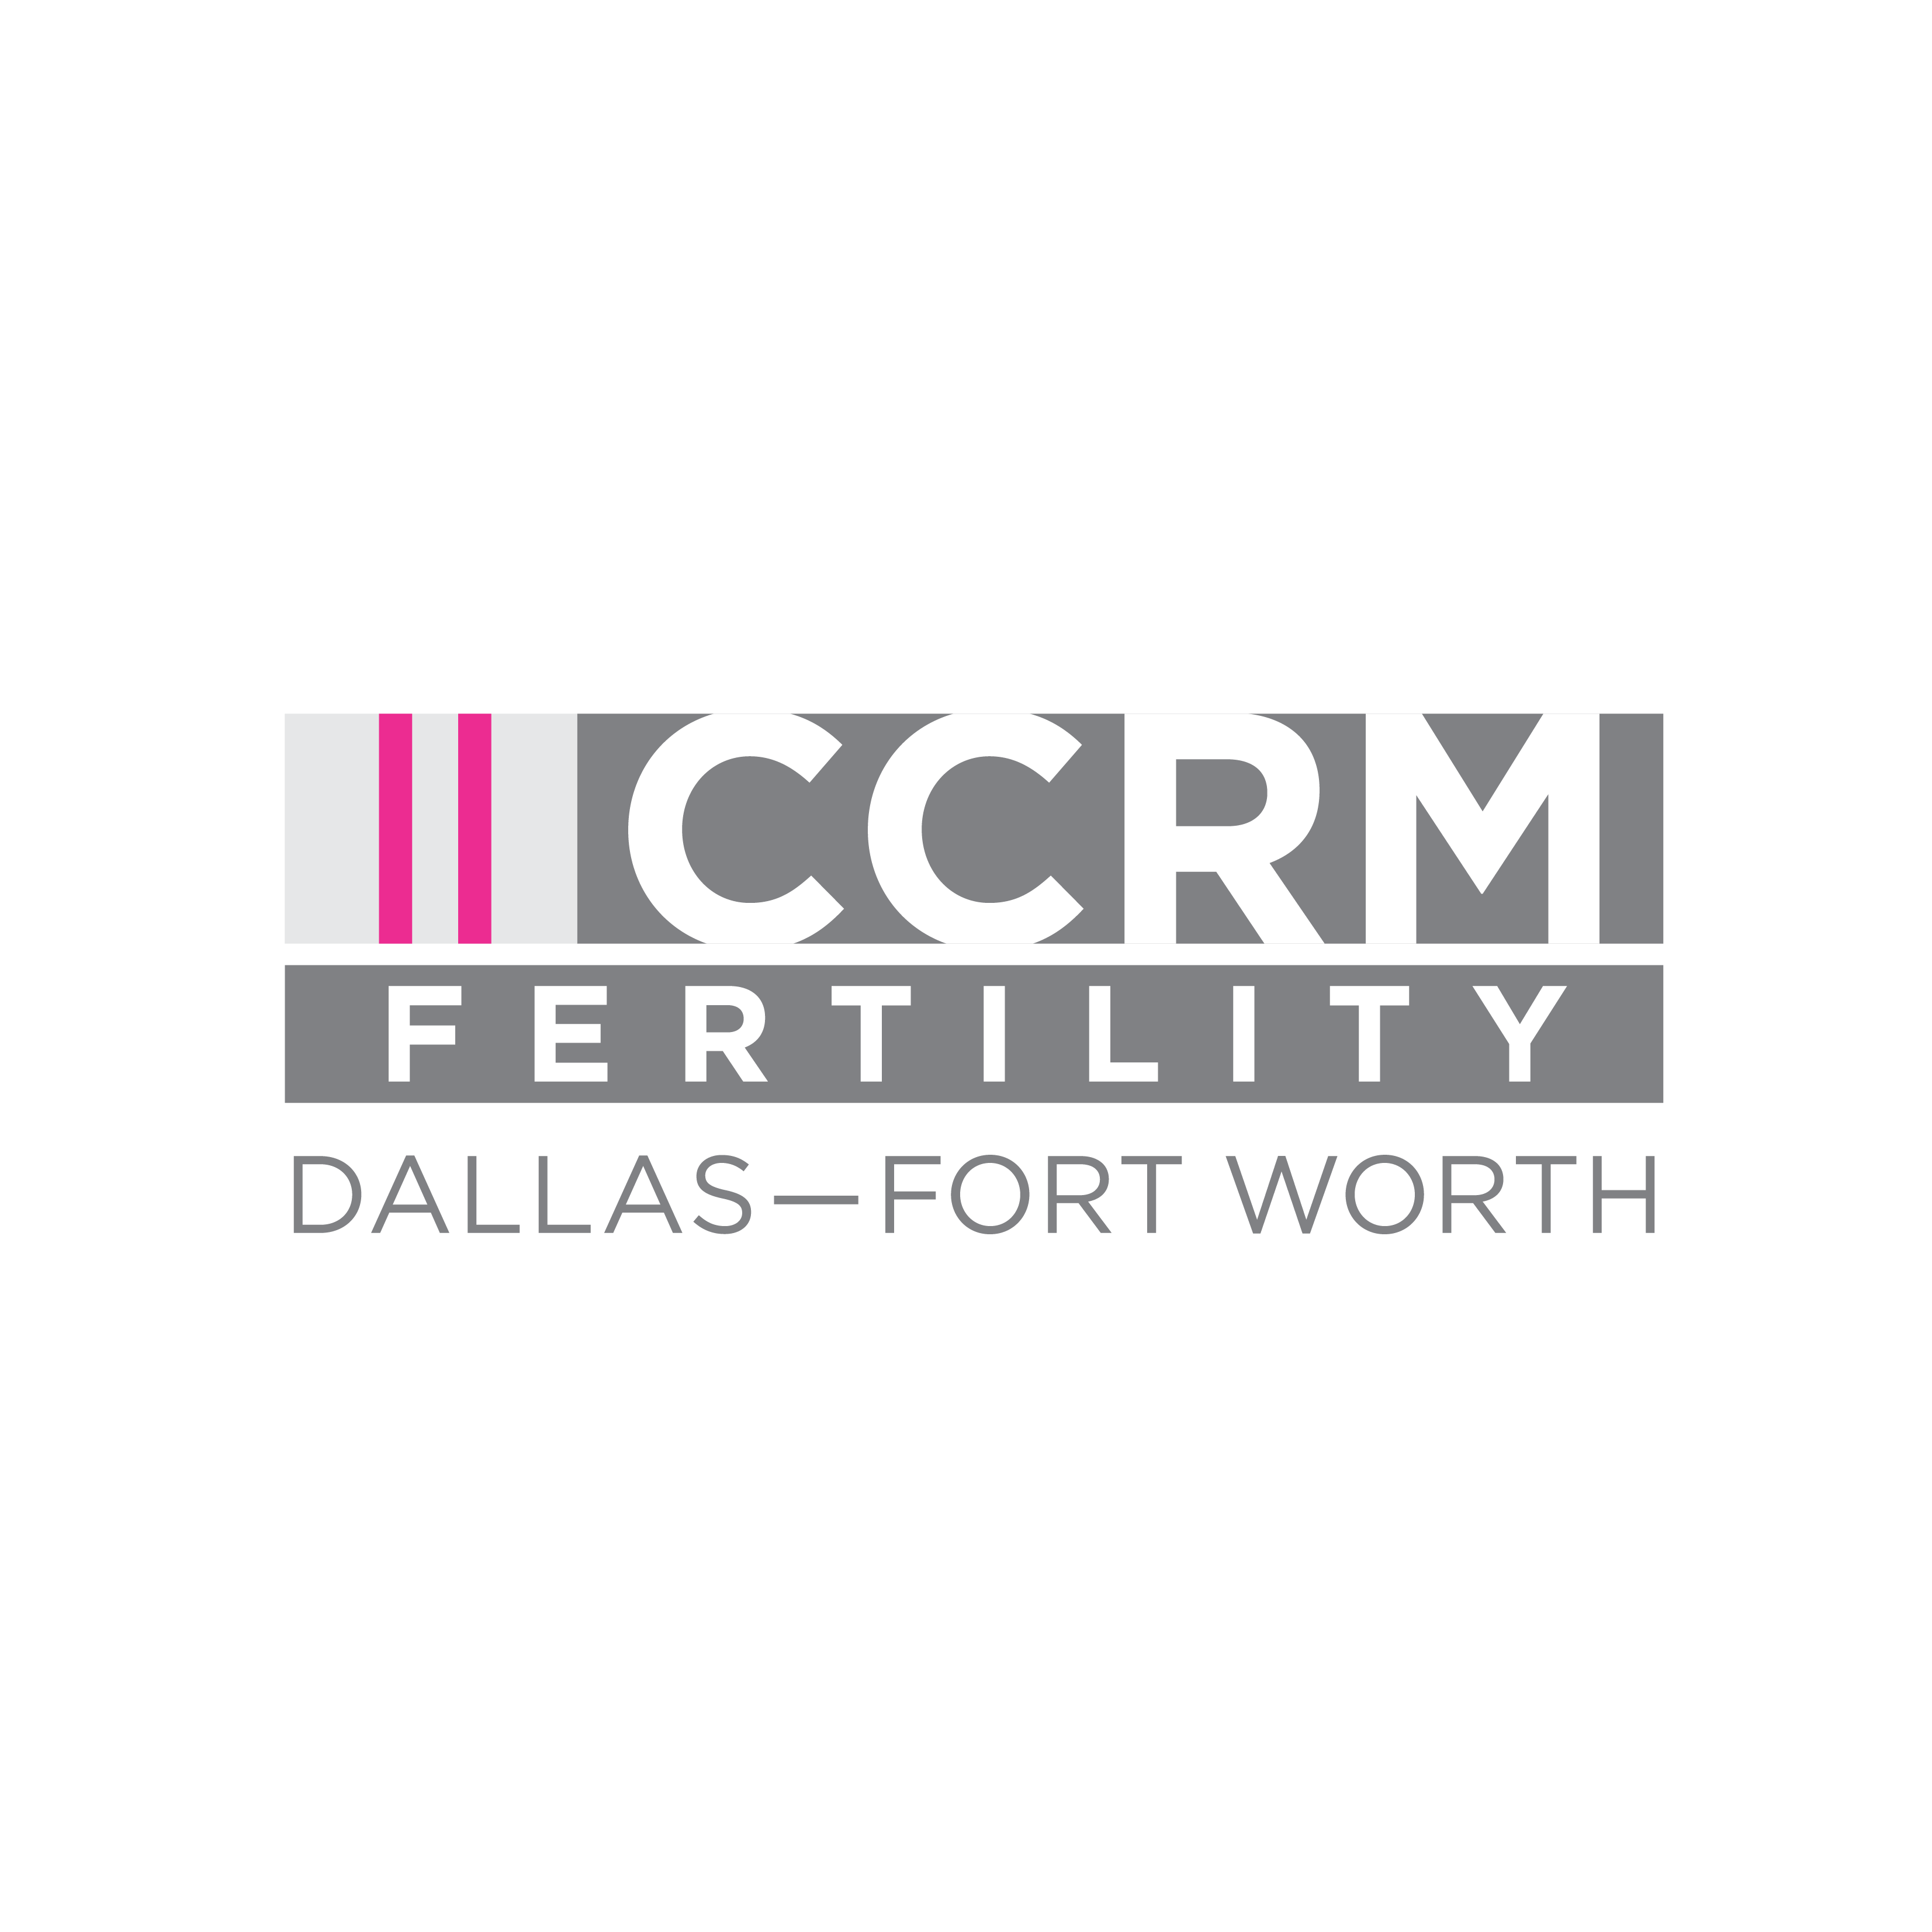 CCRM Fertility Dallas-Fort Worth Logo